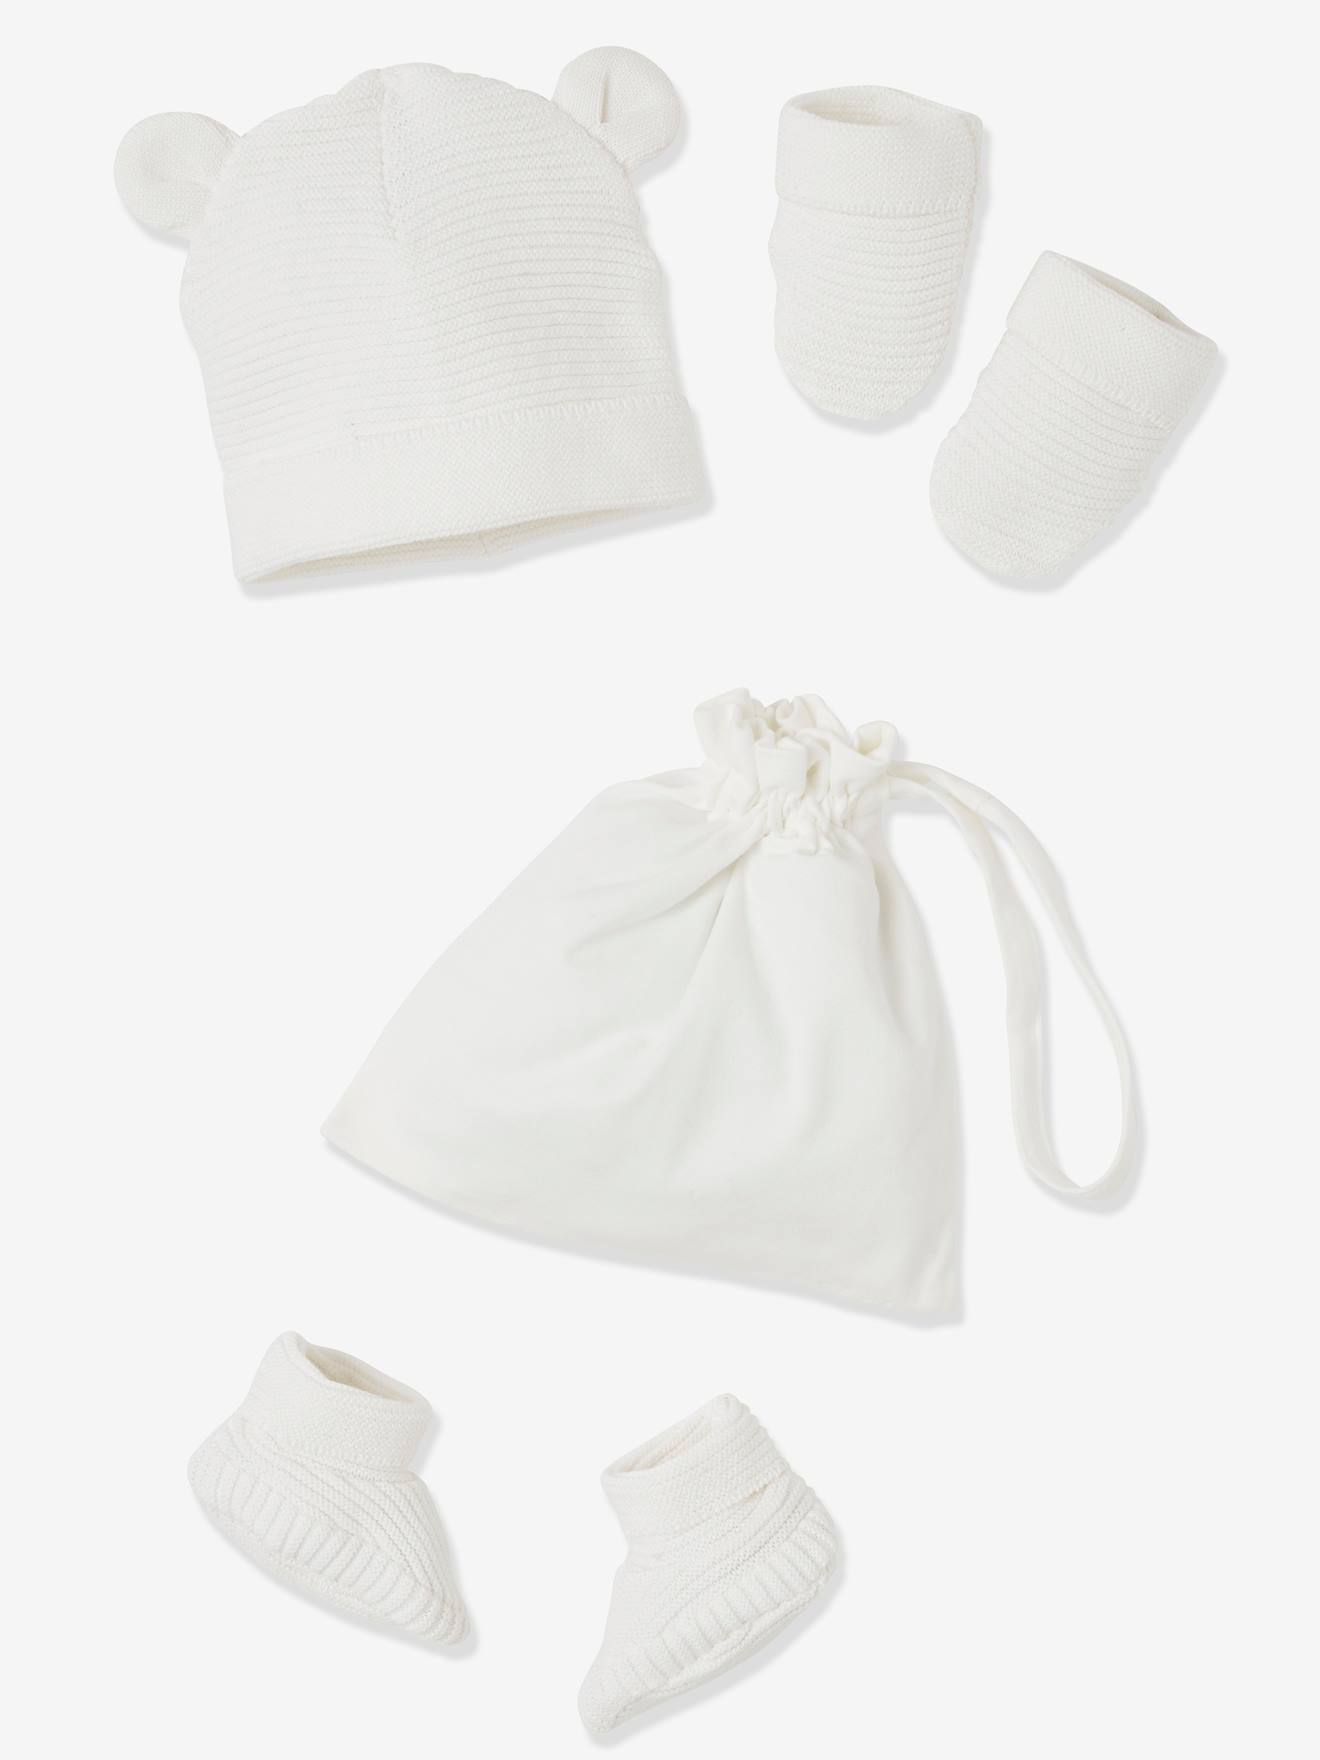 VERTBAUDET Conjunto de gorra, manoplas y patucos para recién nacido, con bolsa a juego blanco medio liso